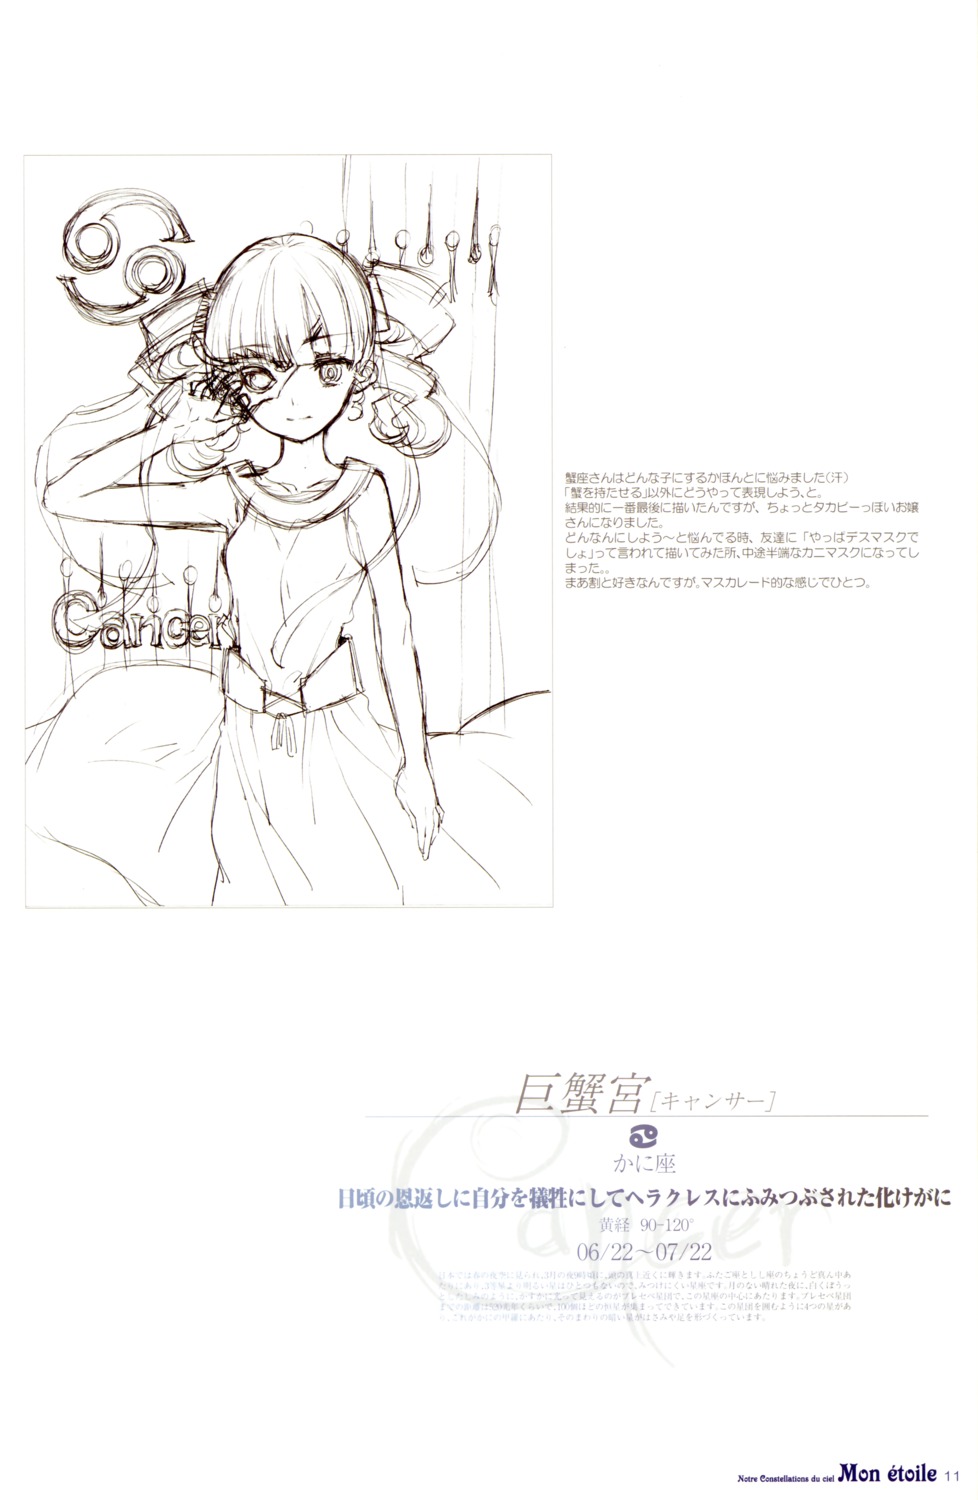 fujitsubo-machine ito_noizi monochrome sketch